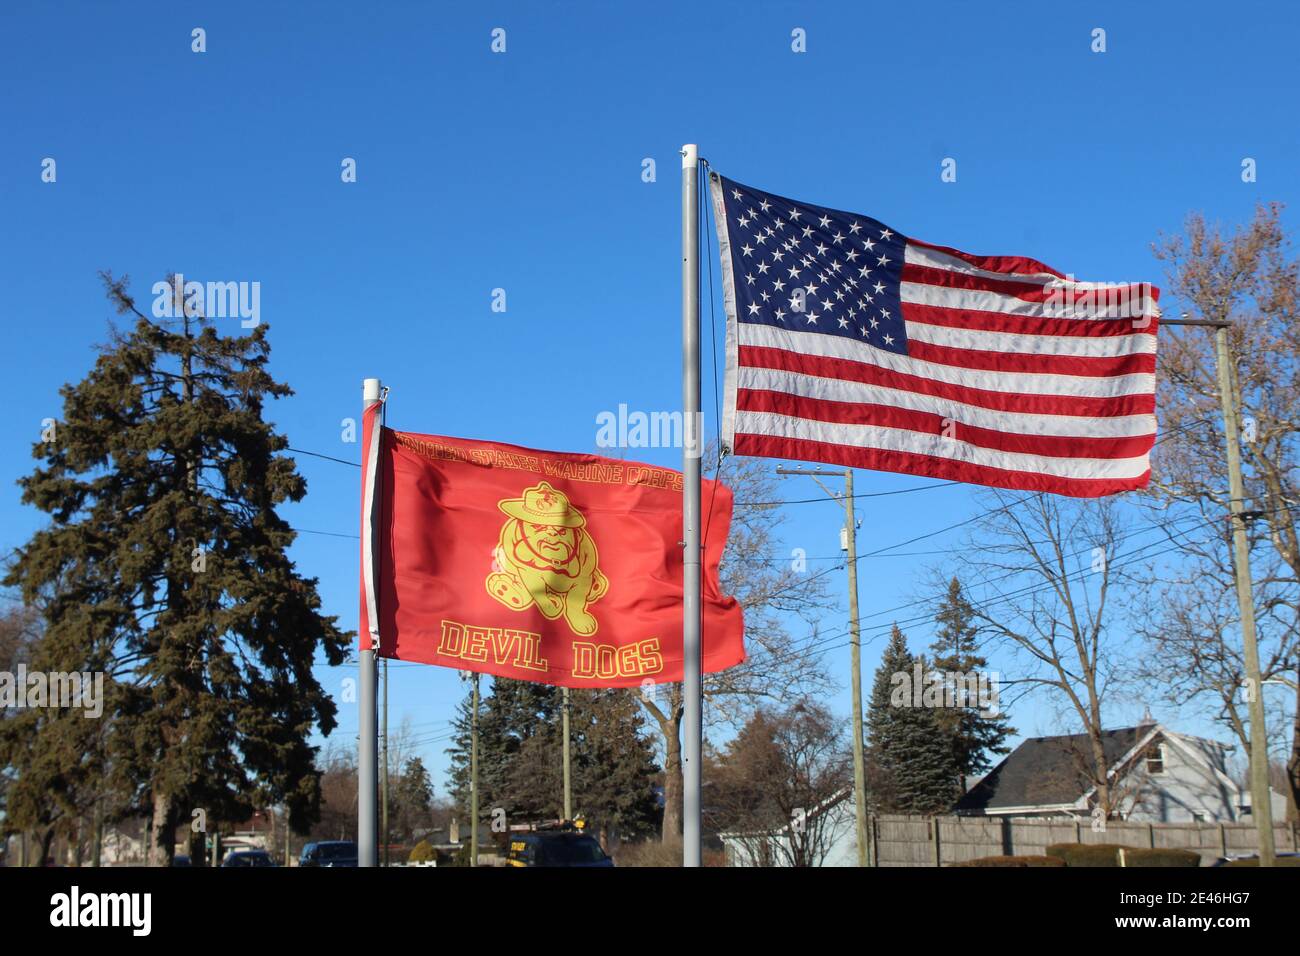 Bandiera degli Stati Uniti Marine Corps Devil Dogs con bandiera degli Stati Uniti volando accanto ad esso Foto Stock